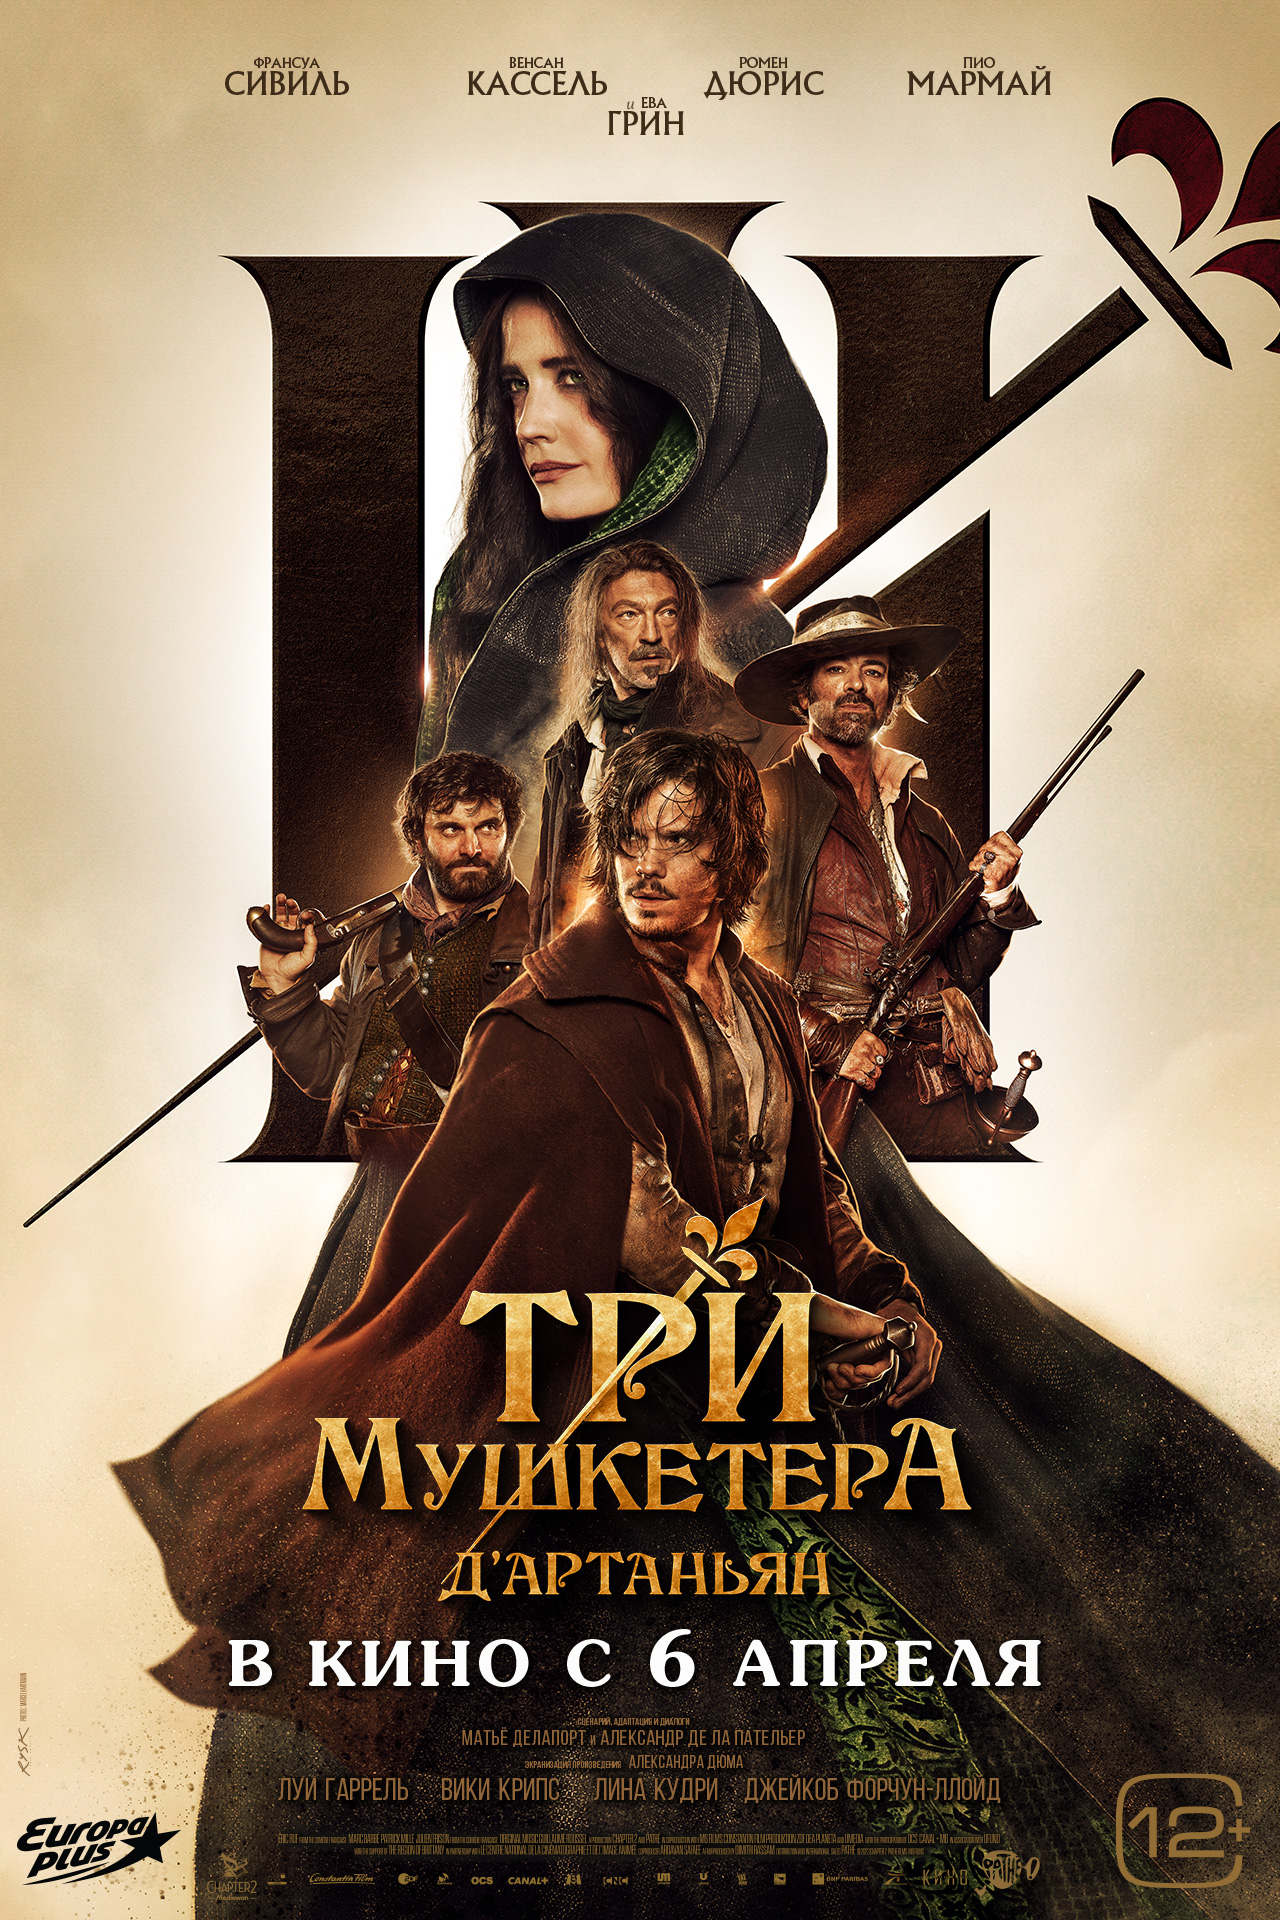 Три мушкетёра: Д’Артаньян, постер № 3